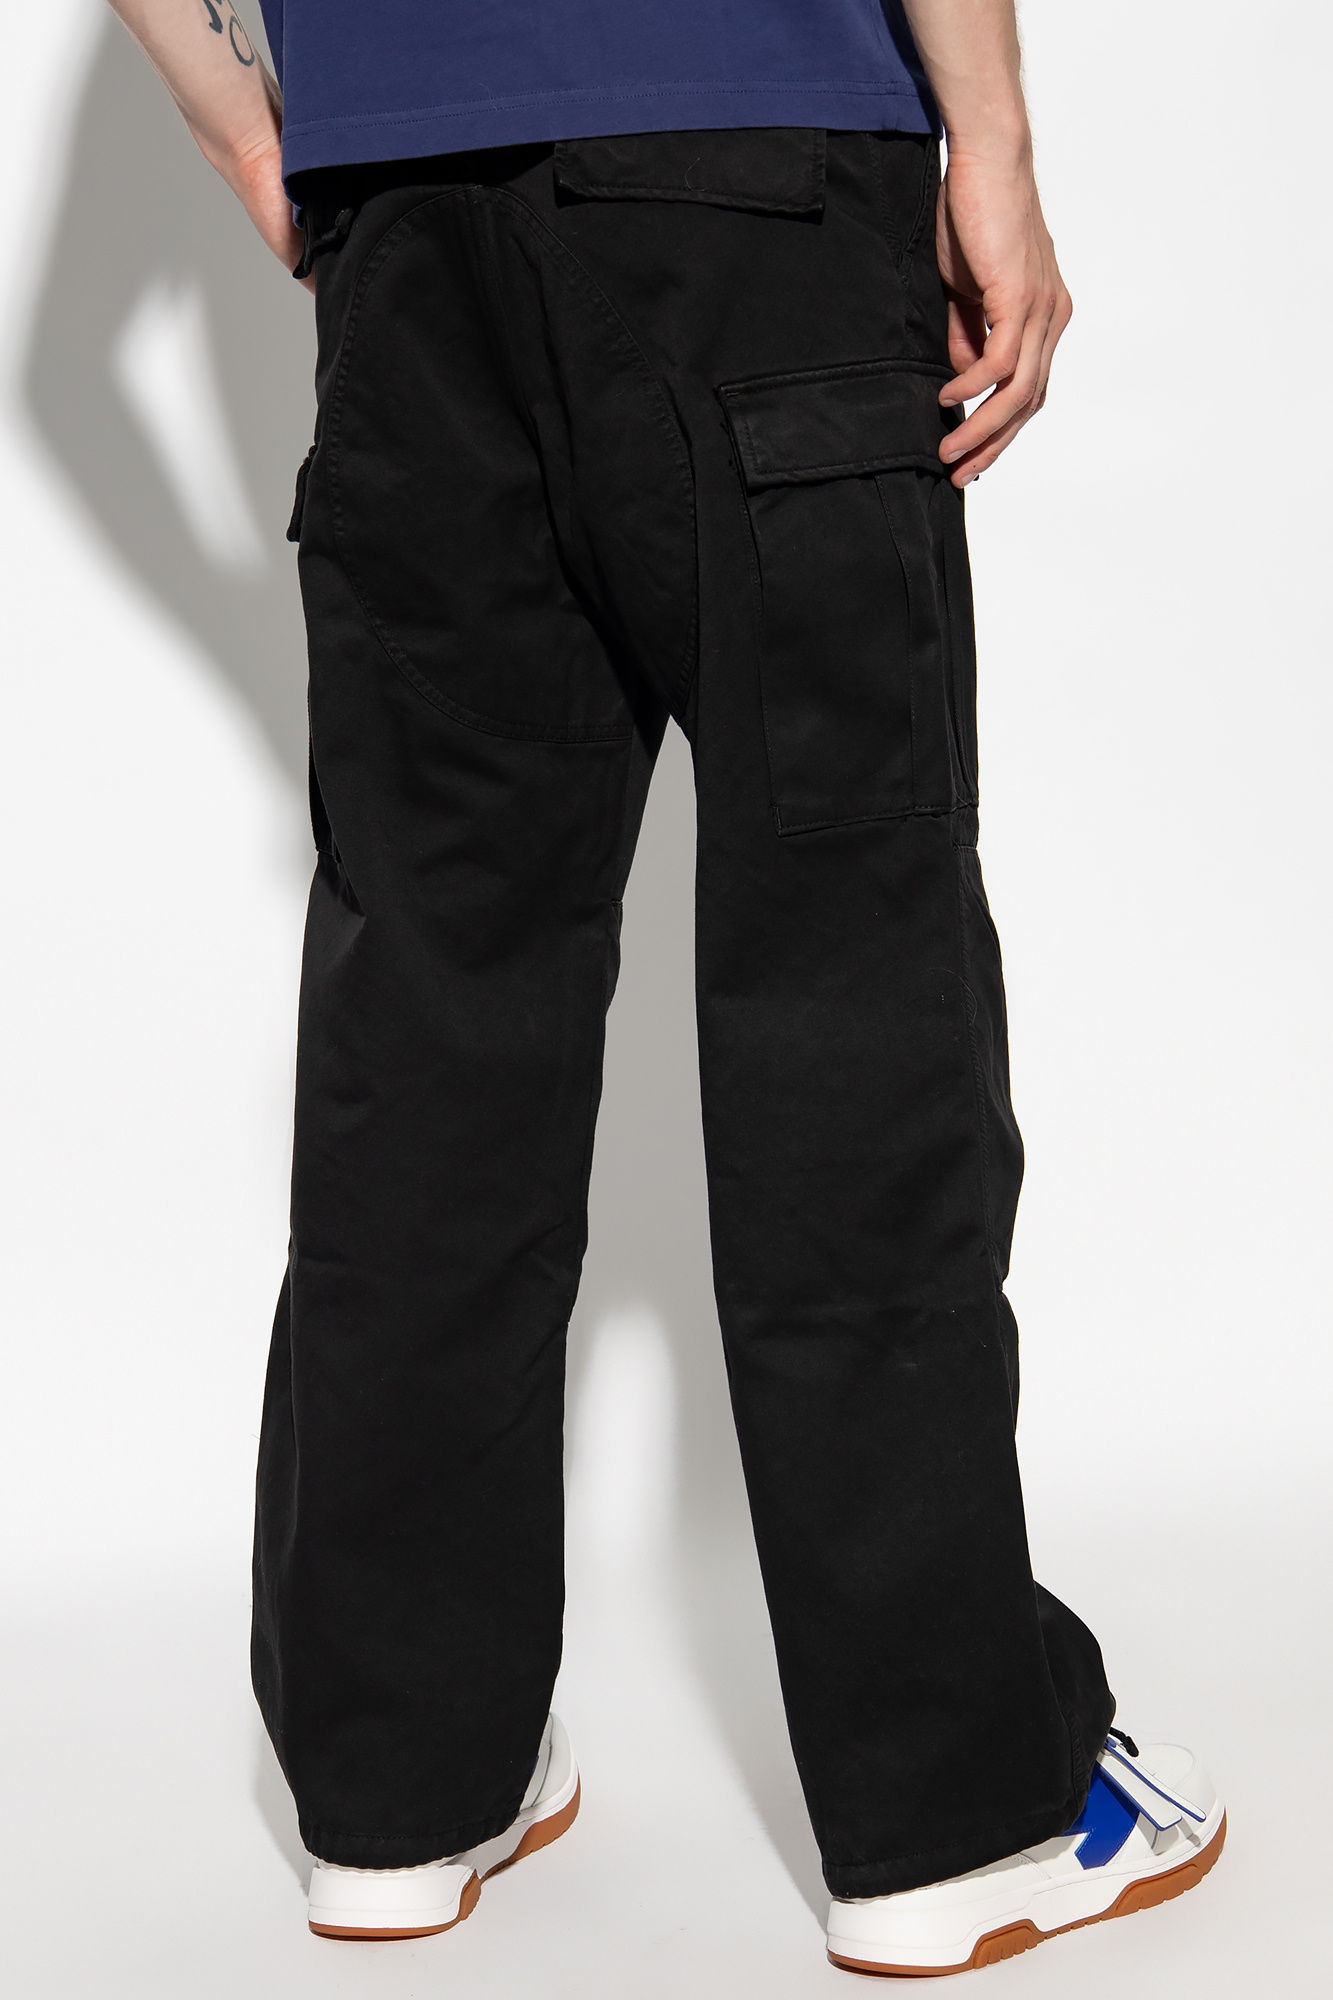 VbjdevelopmentsShops Comoros - tommy jeans high rise belted pant 